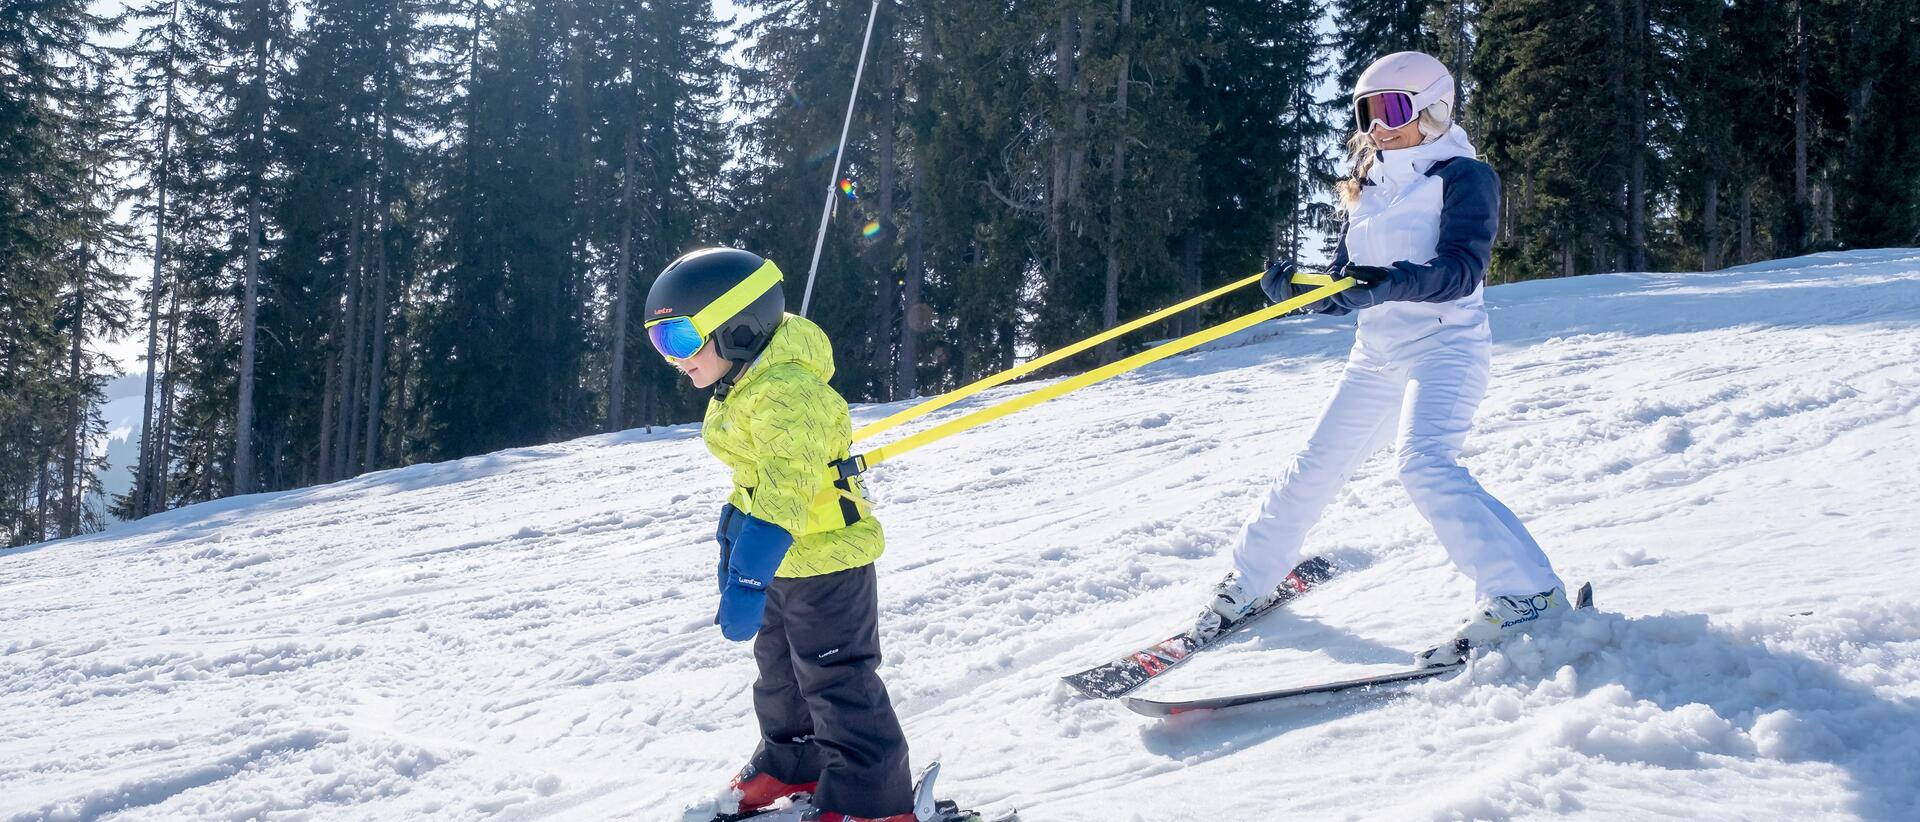 kobieta z dzieckiem zjeżdżają ze stoku na nartach